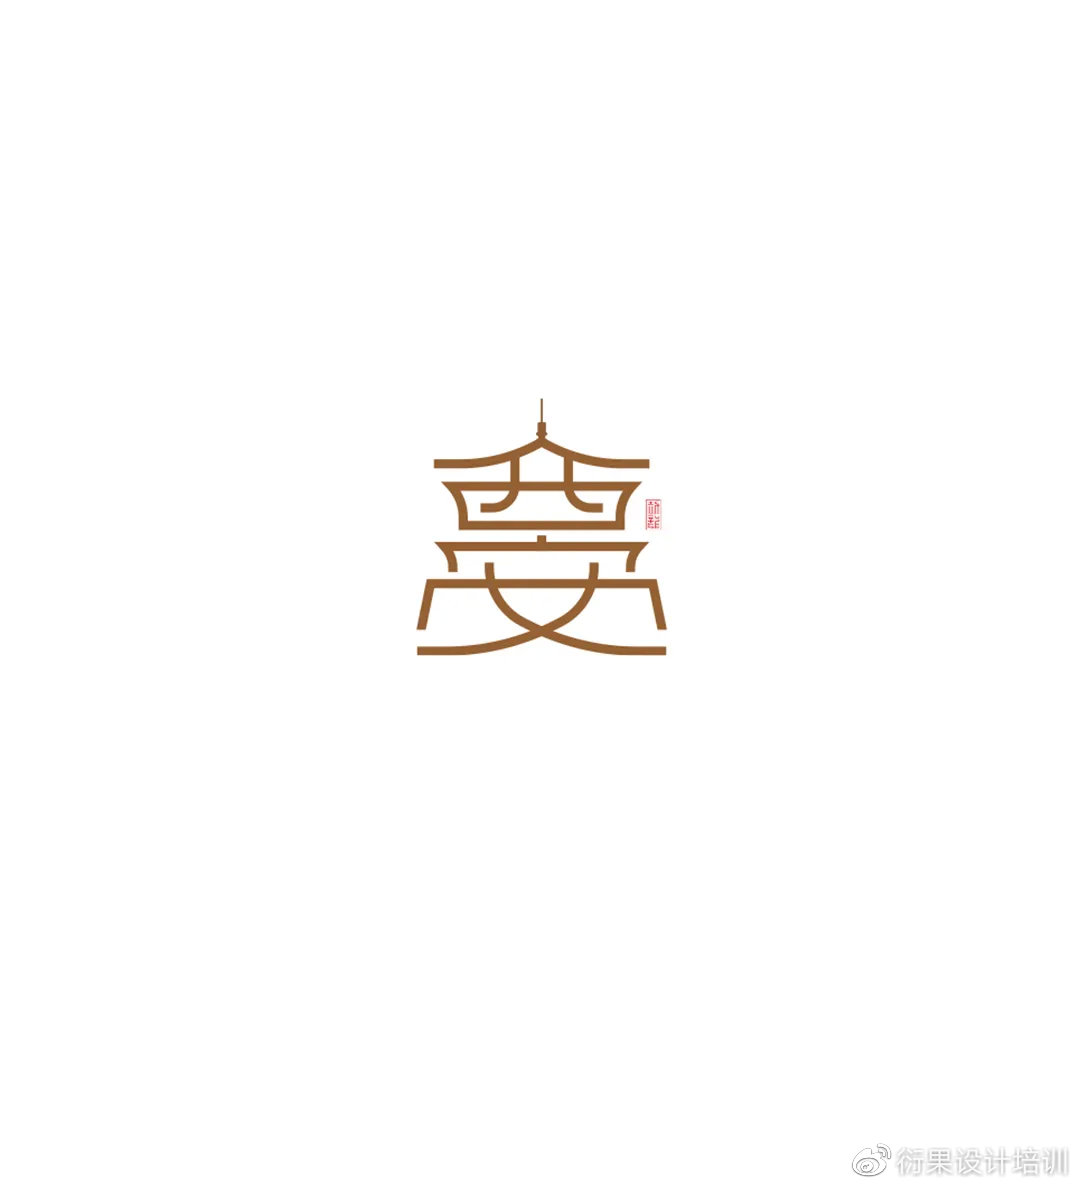 【字体设计】中文汉字形态创意设计技巧